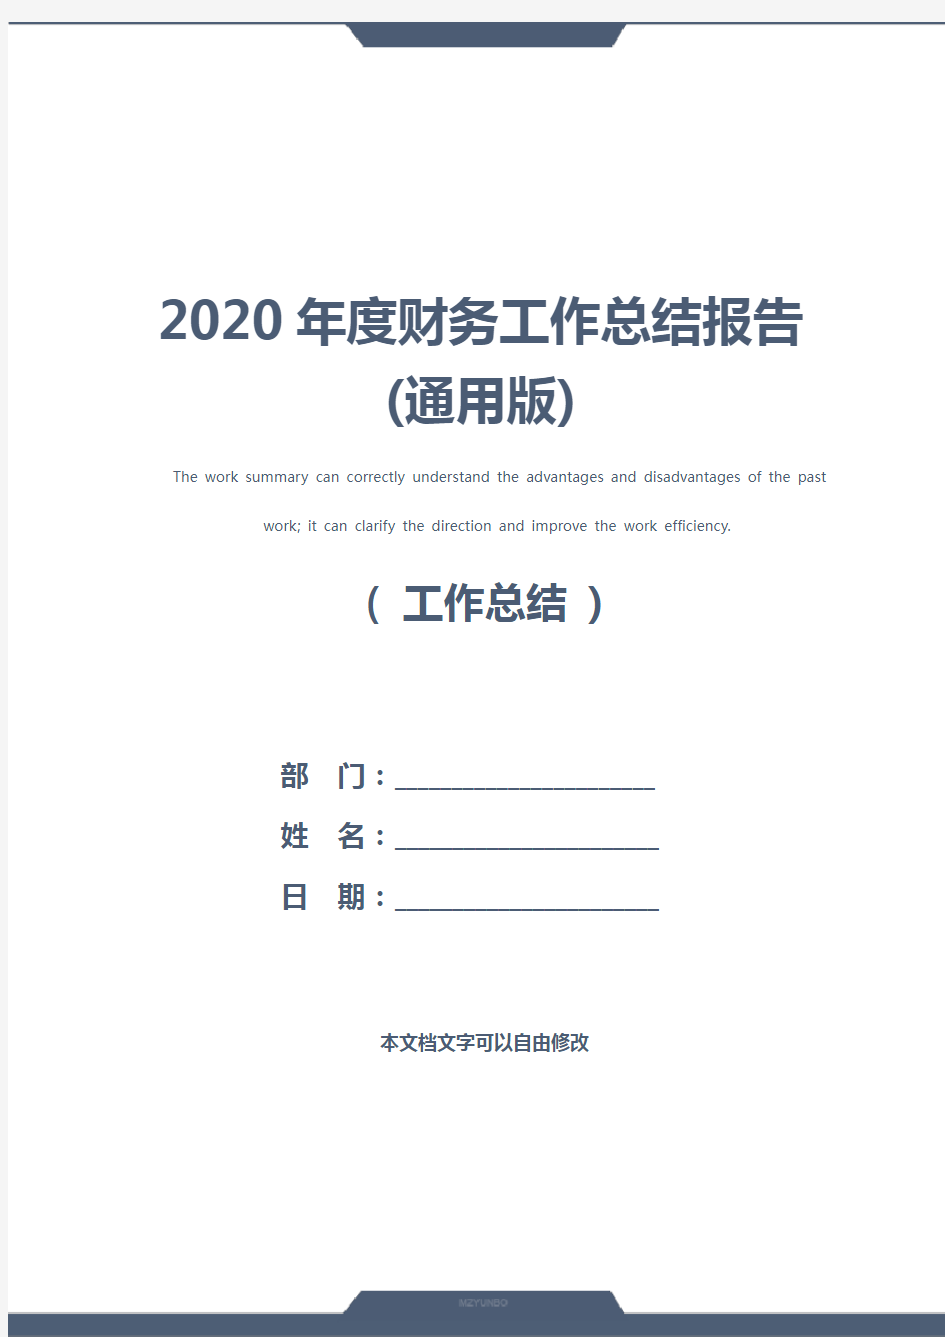 2020年度财务工作总结报告(通用版)